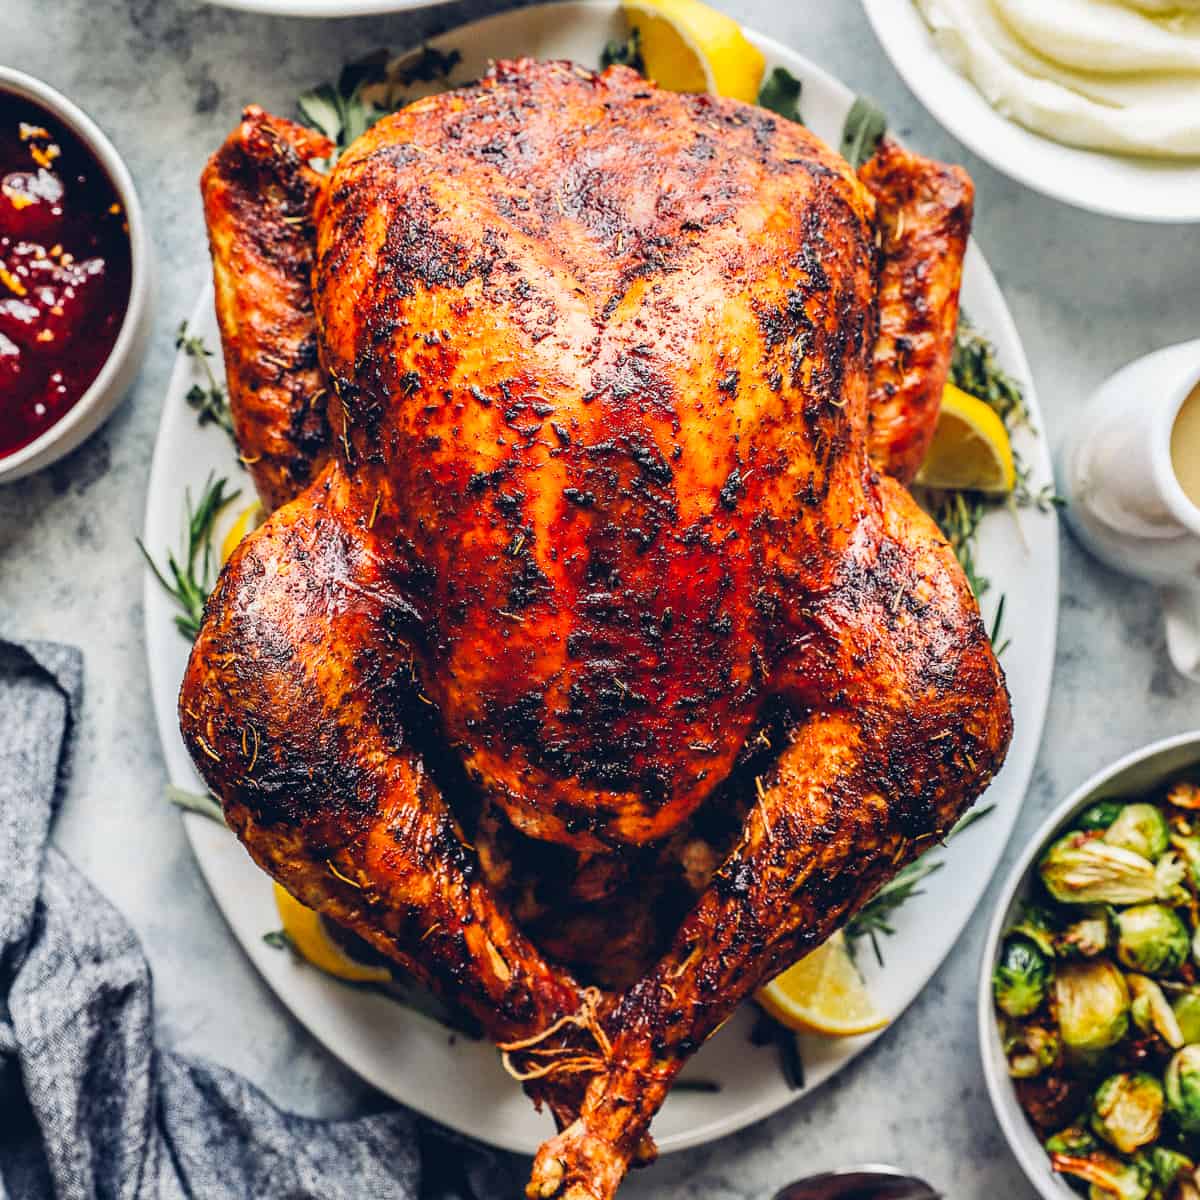 Turkey for Thanksgiving. Family cooking festive dinner